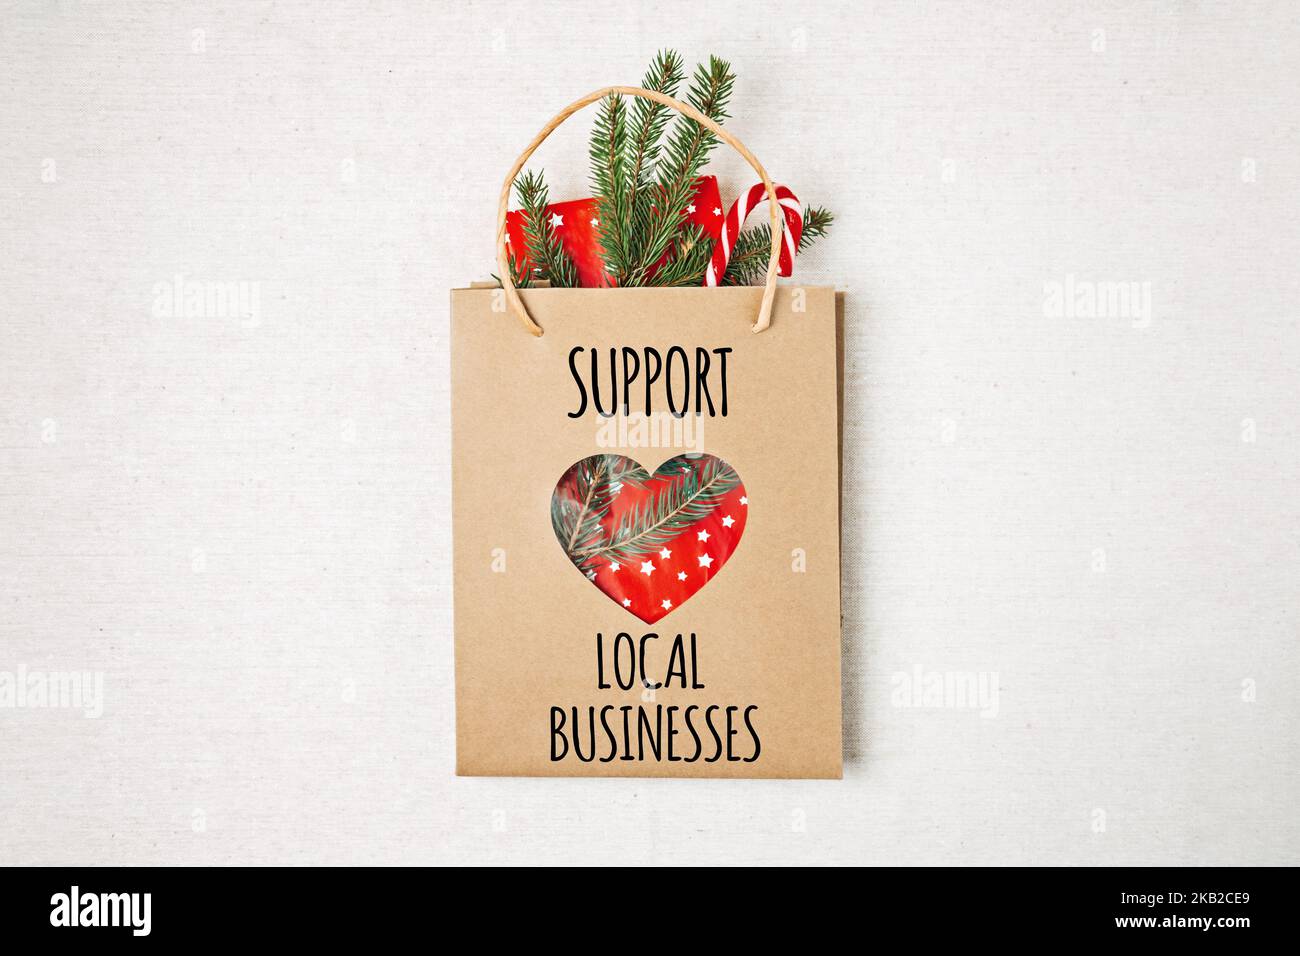 Support Local Business Text auf Papier Einkaufstasche geschrieben. Flaches Lay mit Support Local Business Zitat, Weihnachtsdekoration und Einkaufstasche, Geschenk Stockfoto